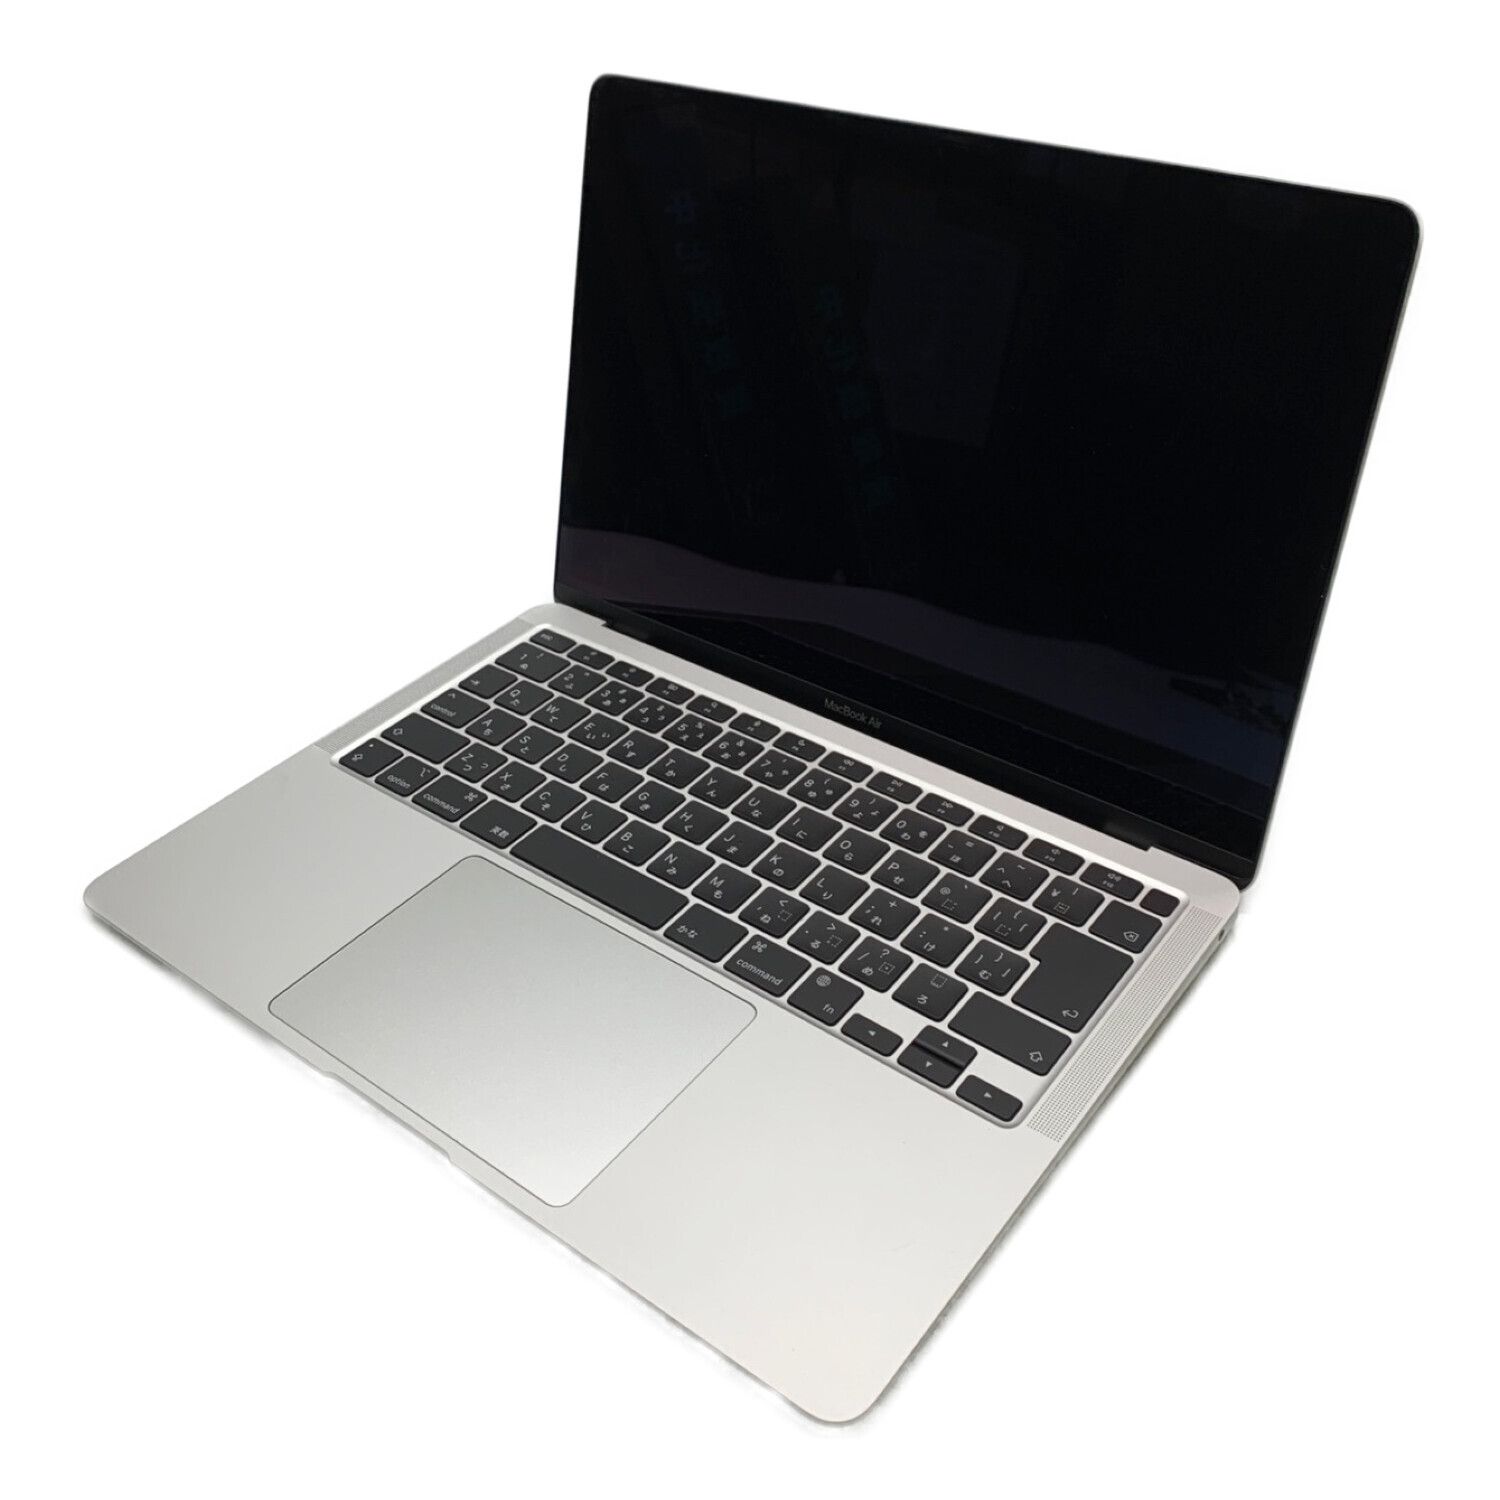 Apple (アップル) MacBook Air M1 2020 MGN93J/A 13インチ Mac OS